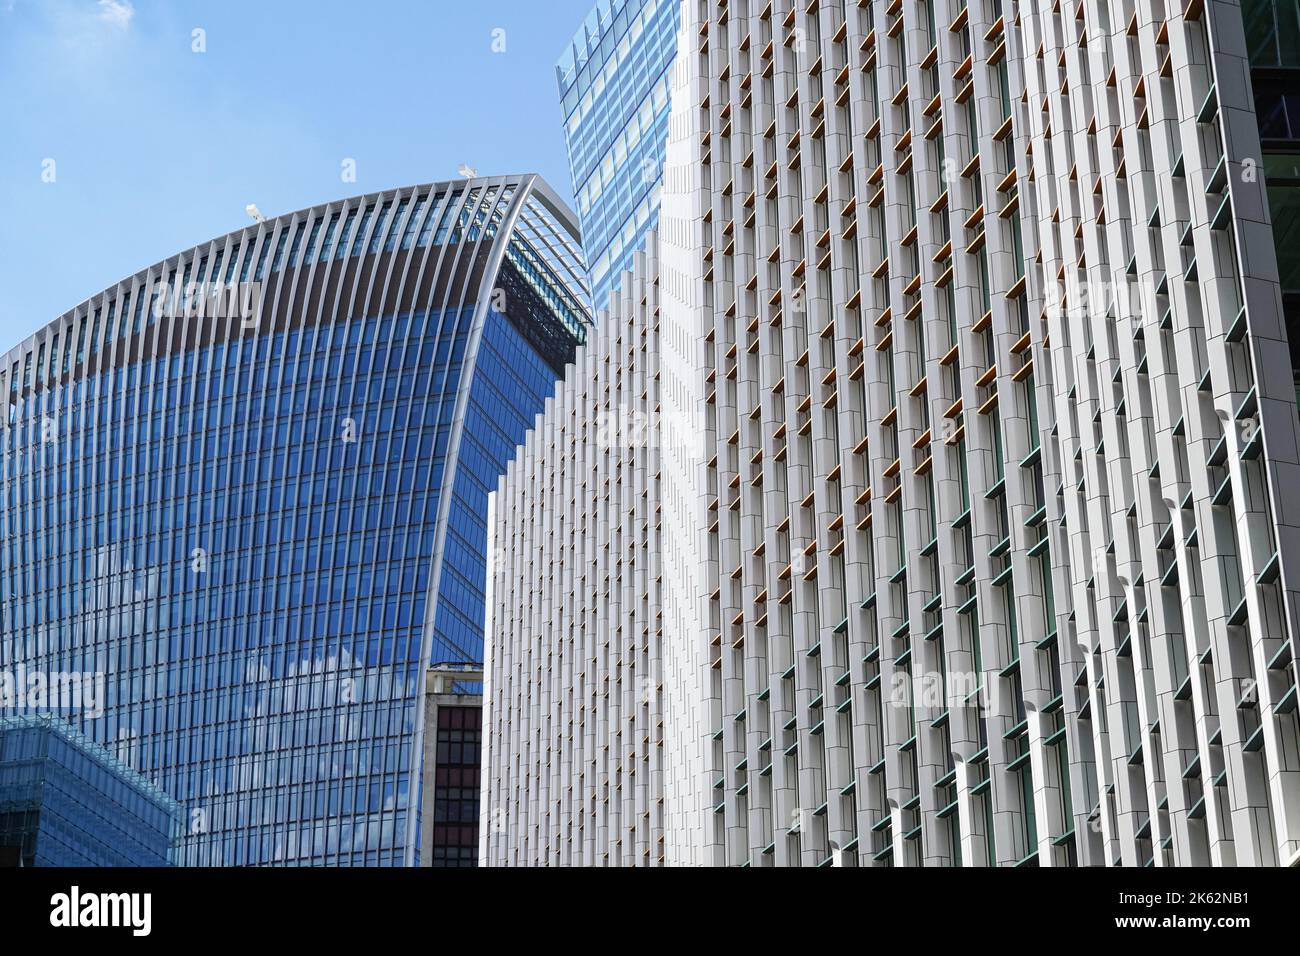 Le gratte-ciel de 20 Fenchurch Street, le Walkie-Talkie et le bâtiment de Fen court au 120 Fenchurch Street à Londres, Angleterre Royaume-Uni Banque D'Images